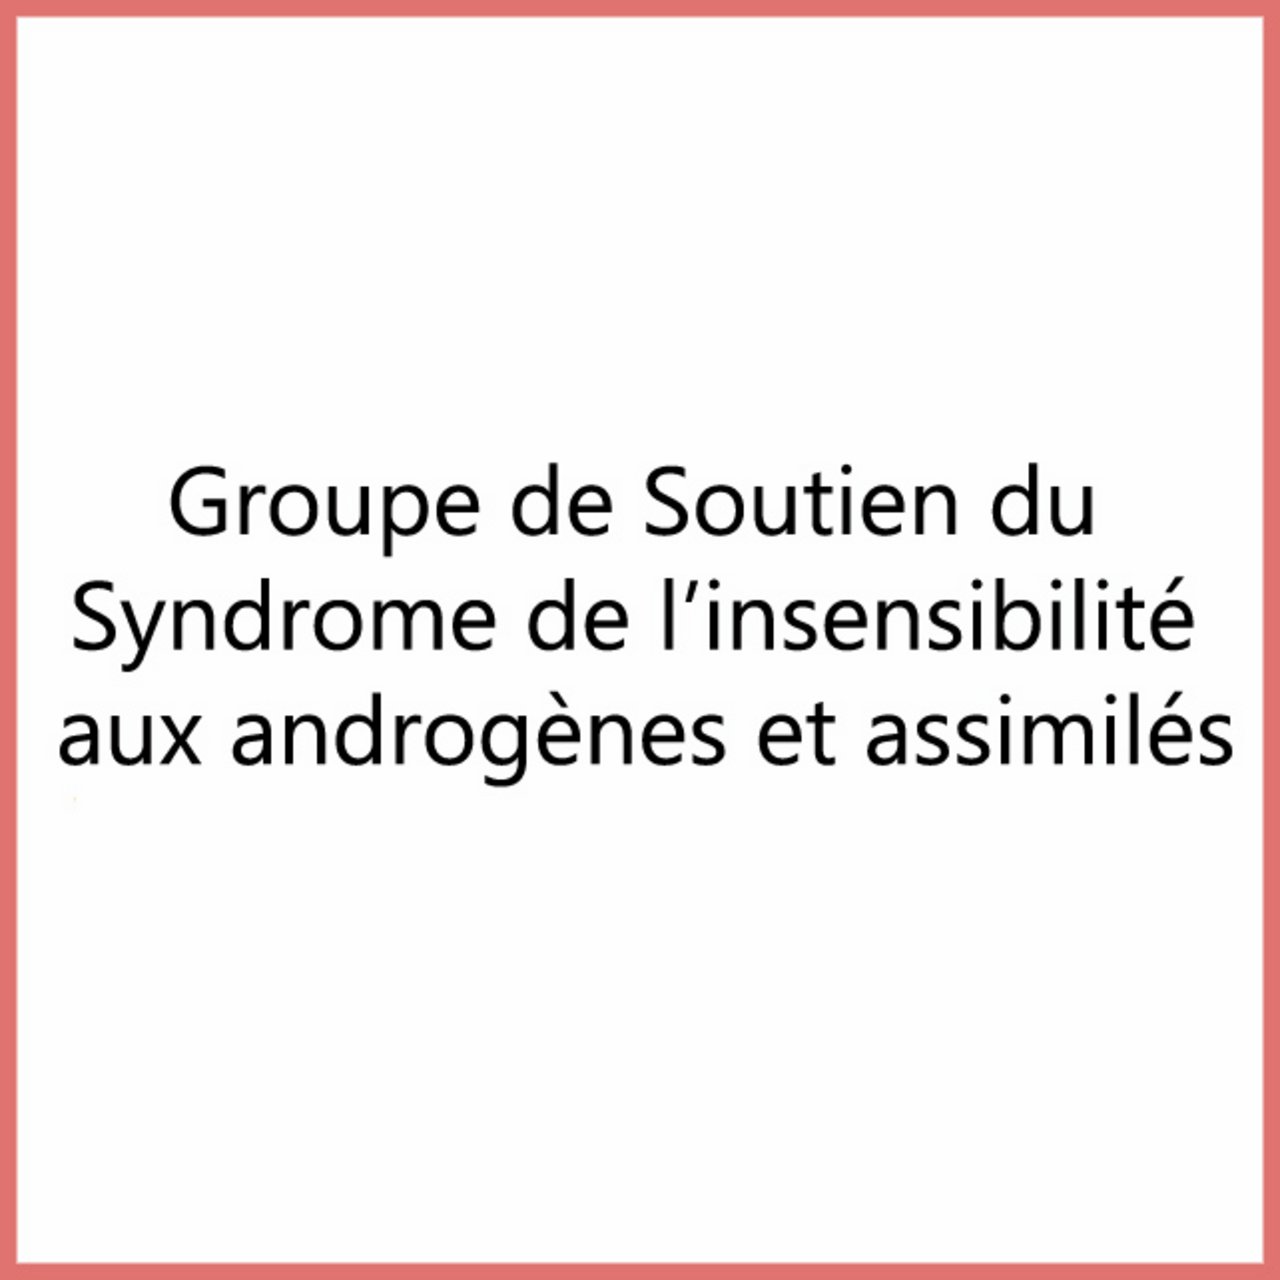 Groupe de Soutien du Syndrome de l'insensibilité aux androgènes et assimilés